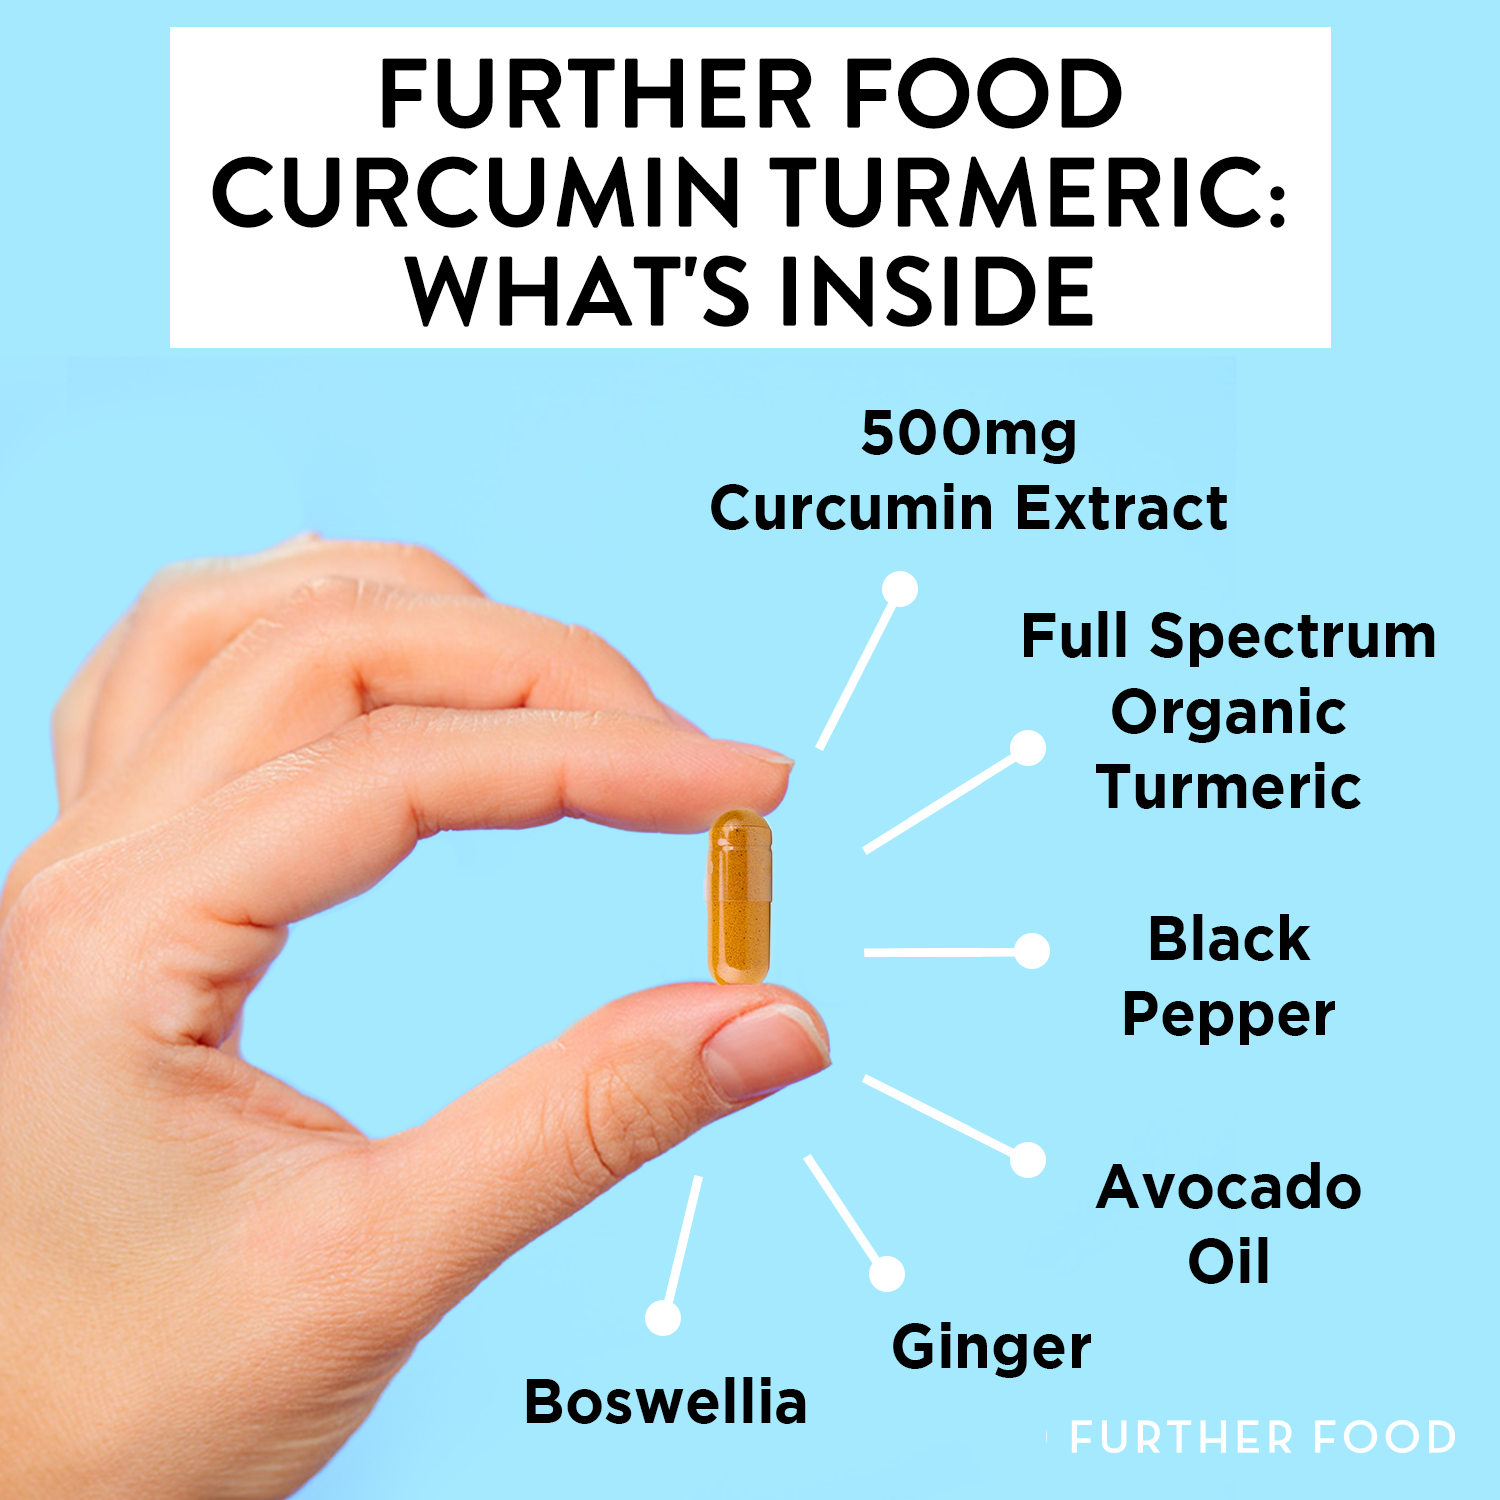 Premium Curcumin Turmeric